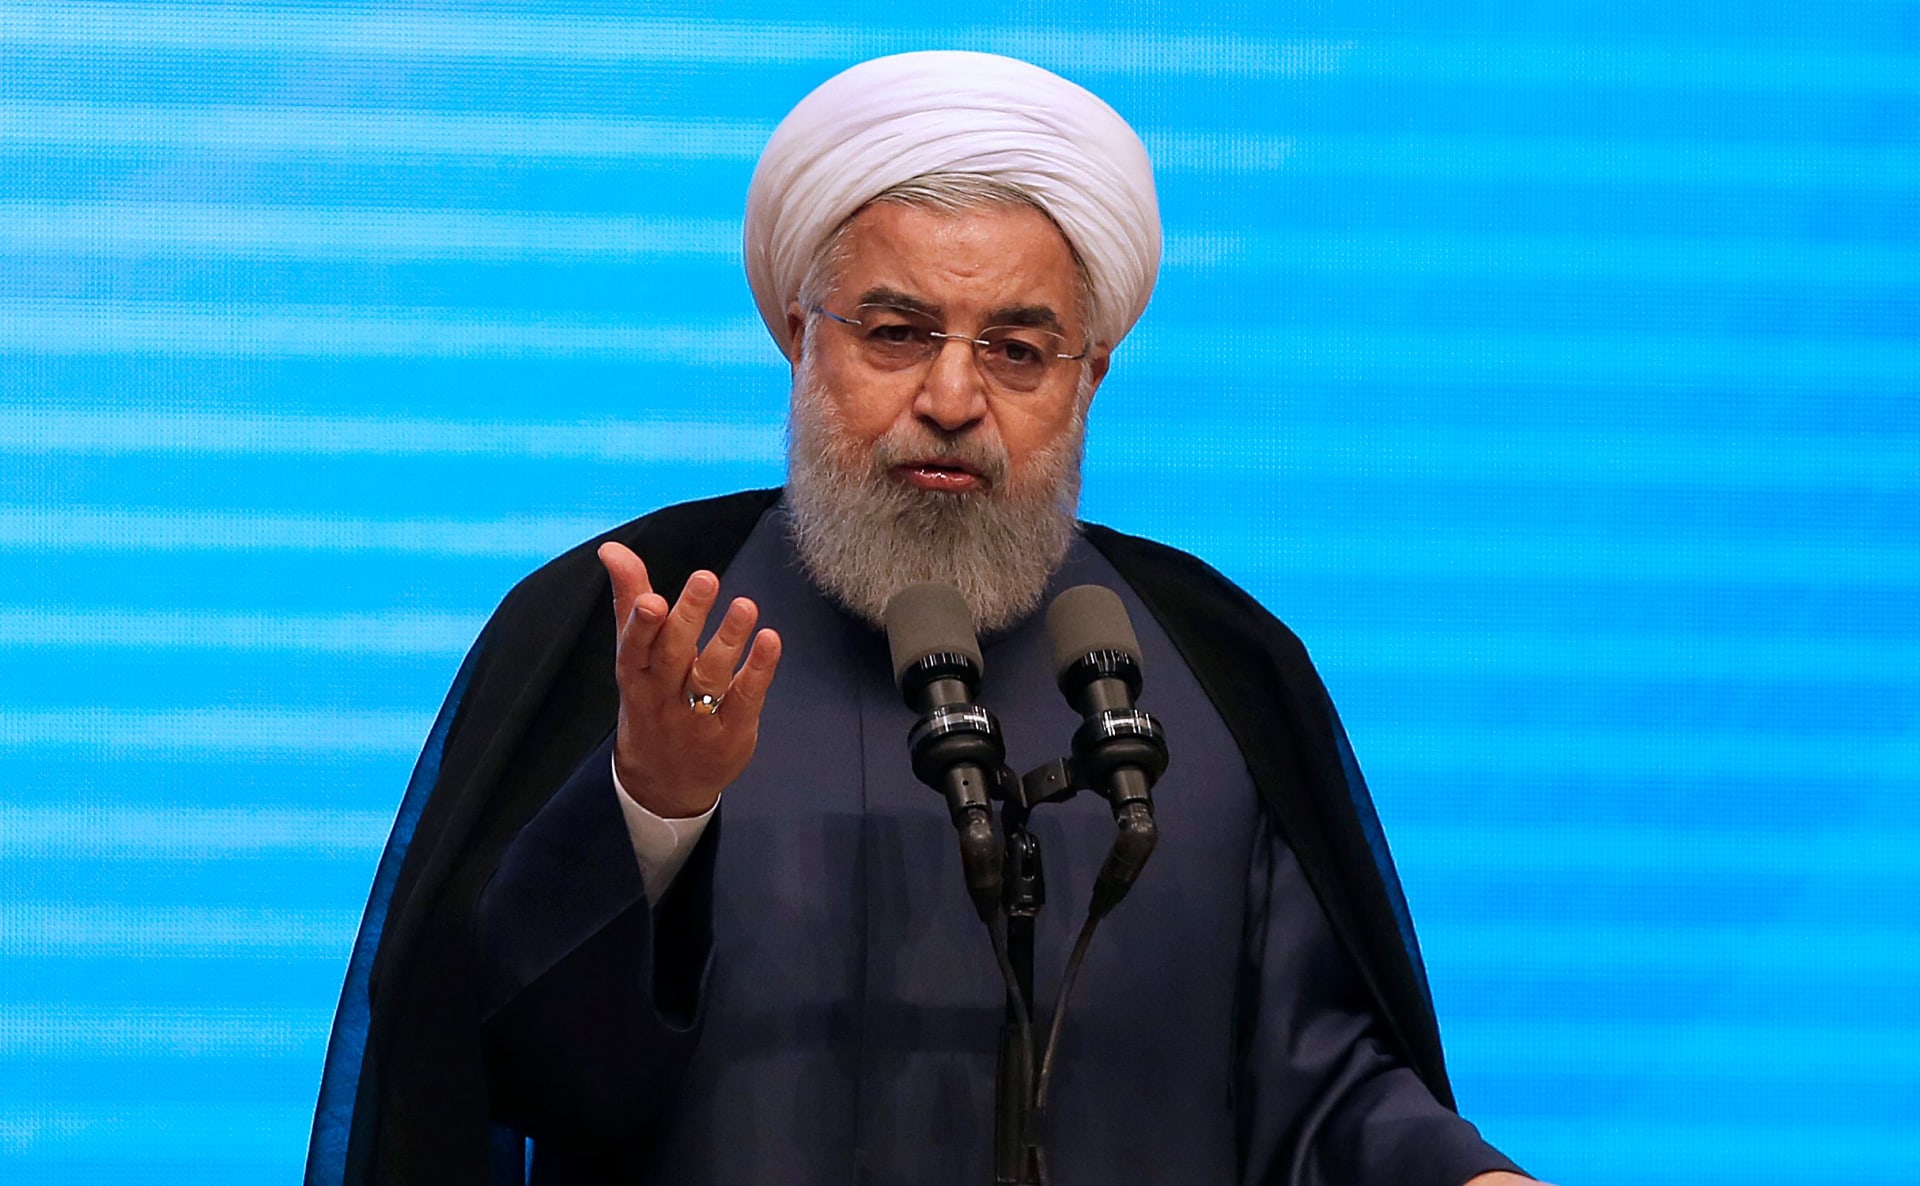 روحاني: قرار حظر "تيليغرام" يتعارض مع الديمقراطية والحرية